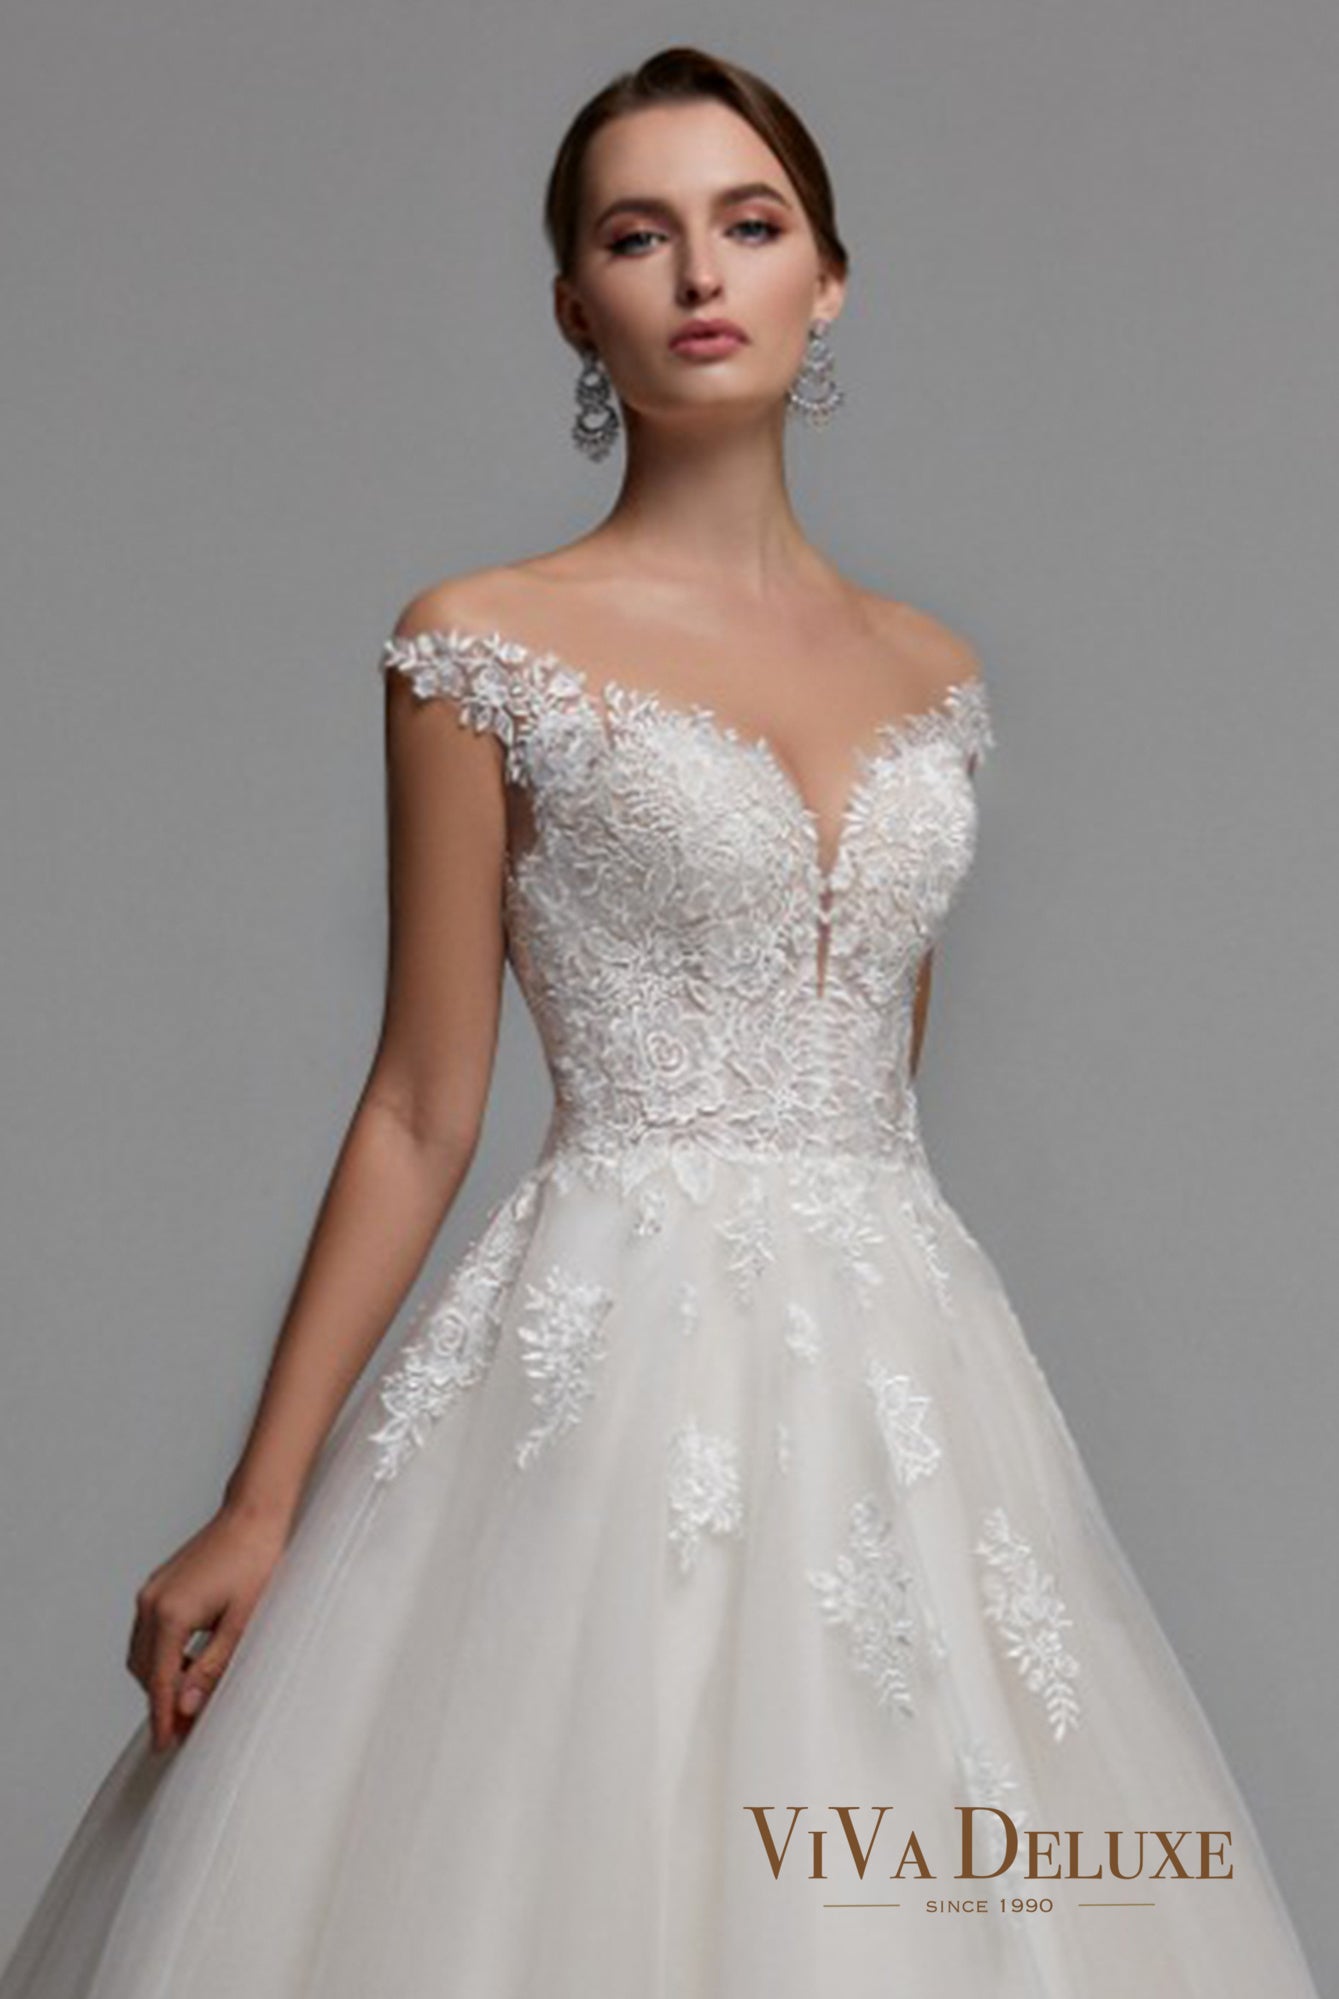 Mira Open back Princess/Ball Gown Sleeveless Wedding Dress 2